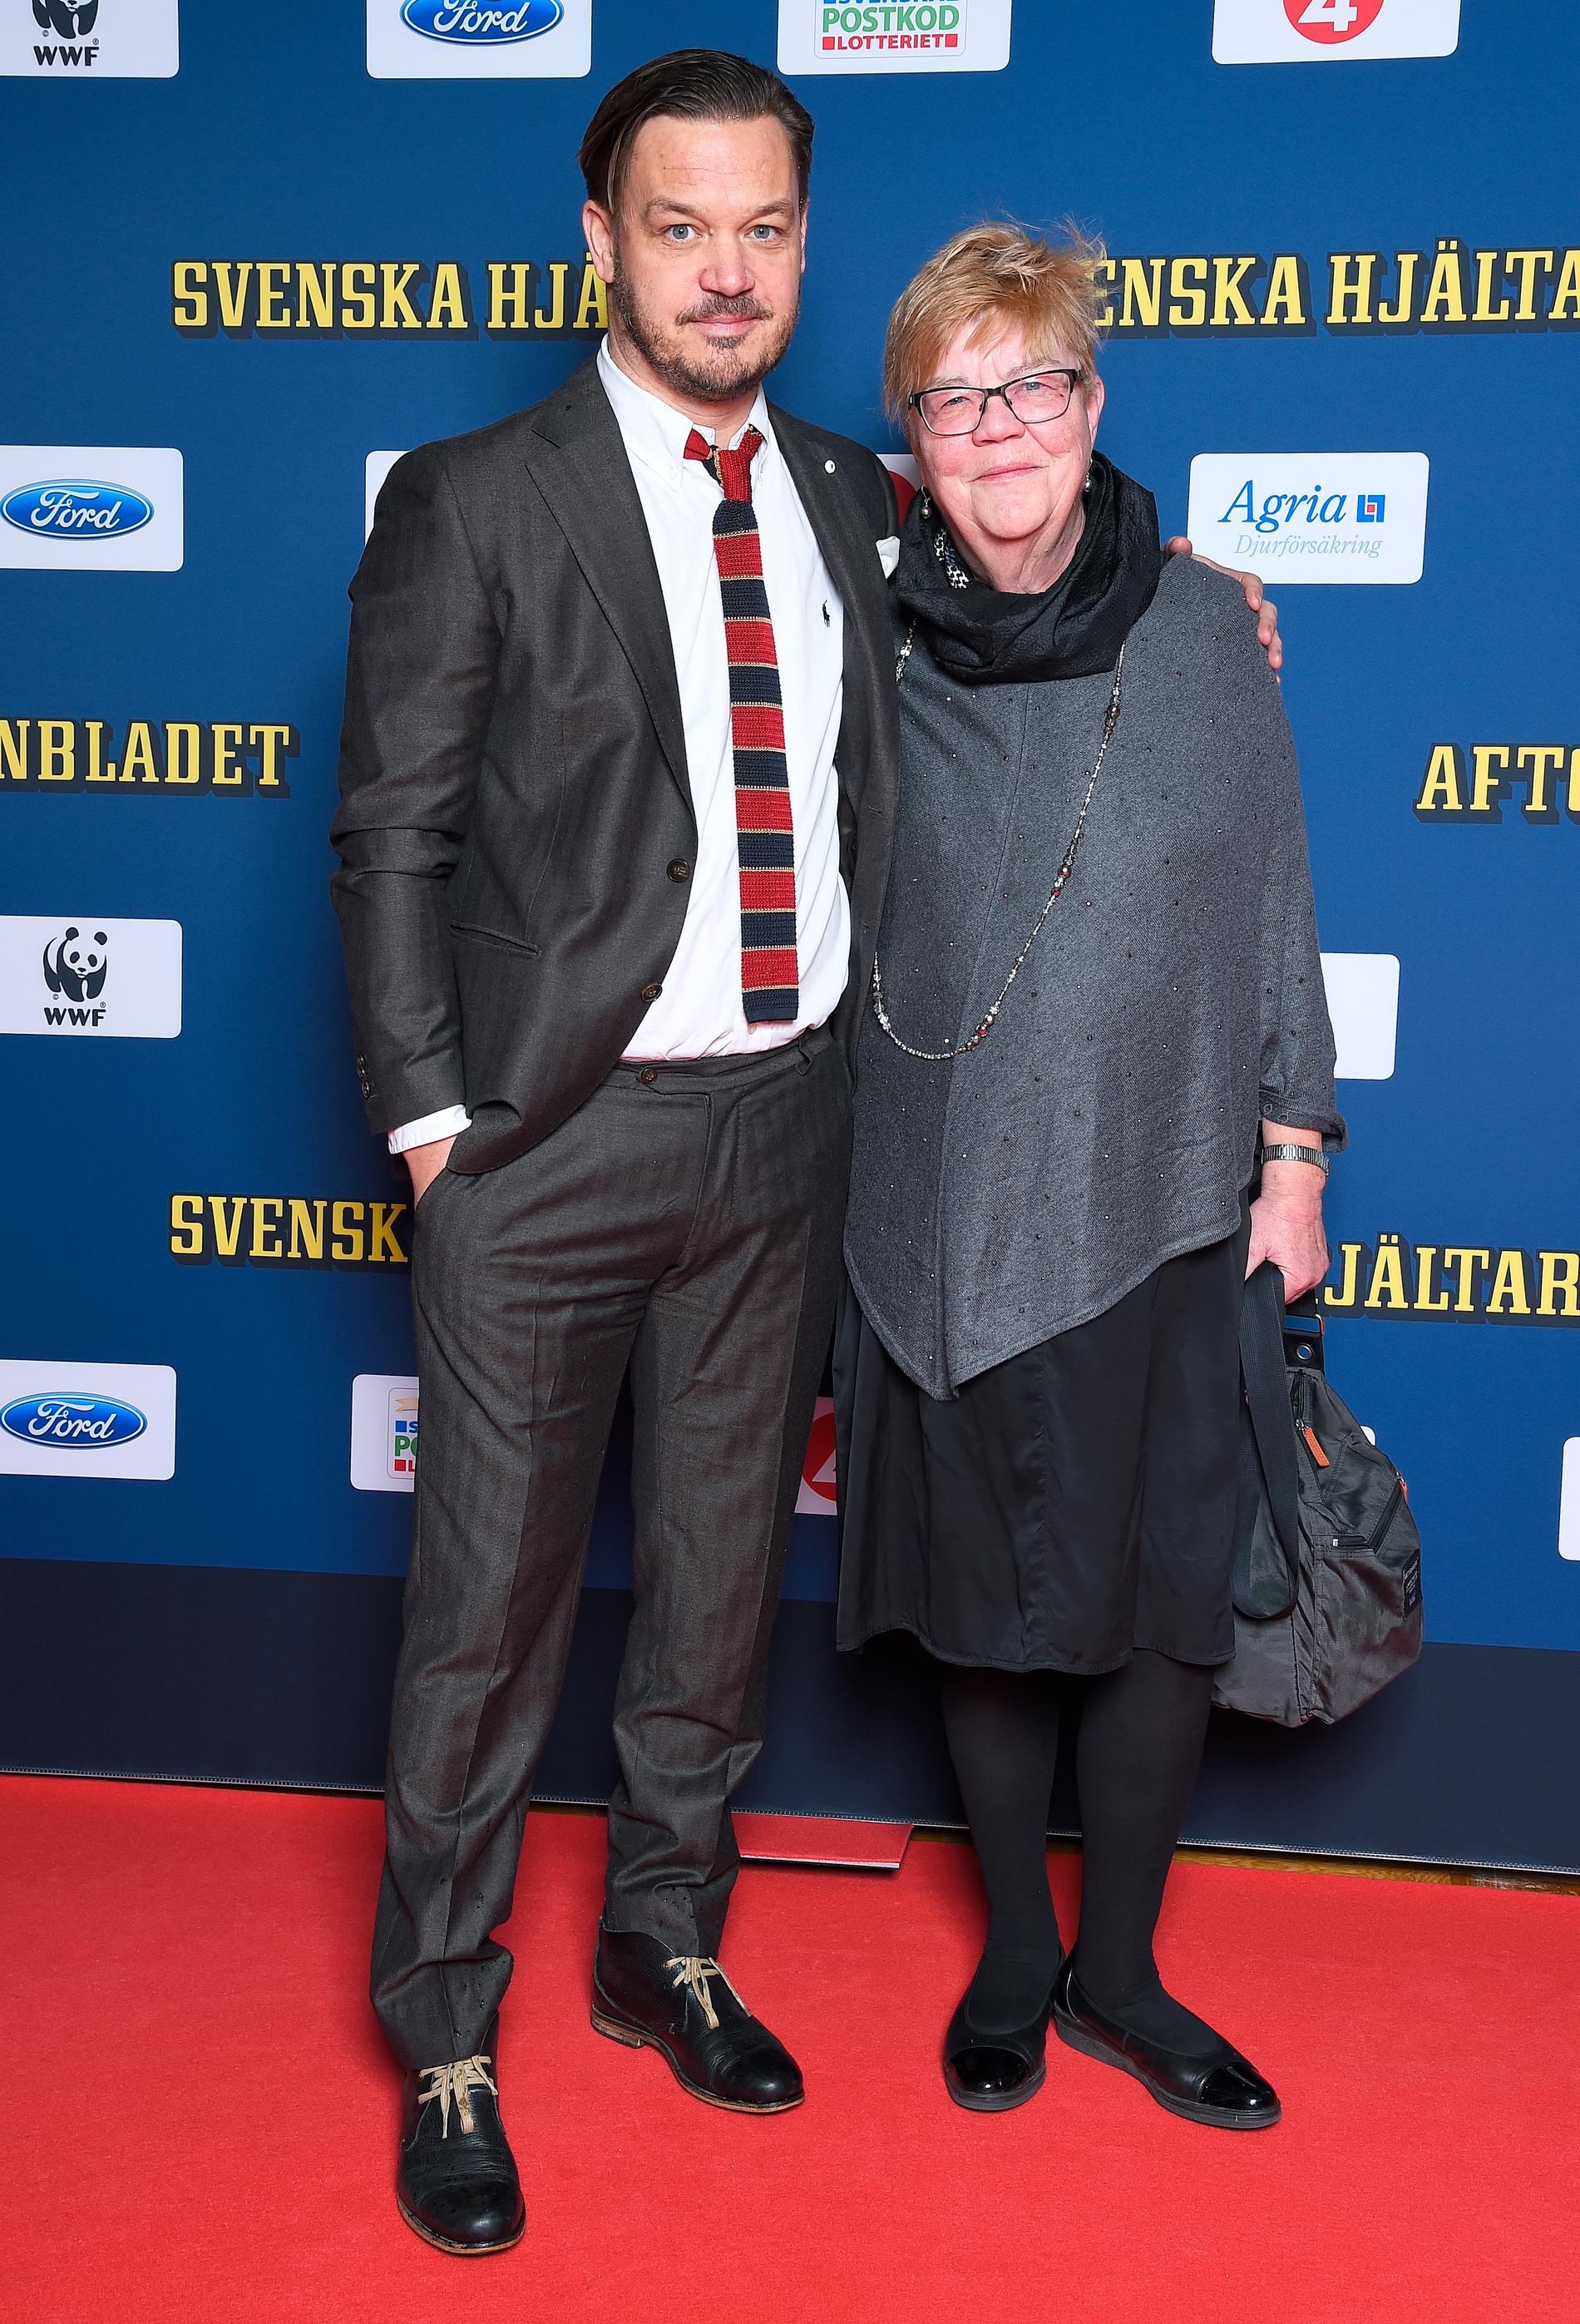 Håkan Andreasson och Lena Melin från Aftonbladet.